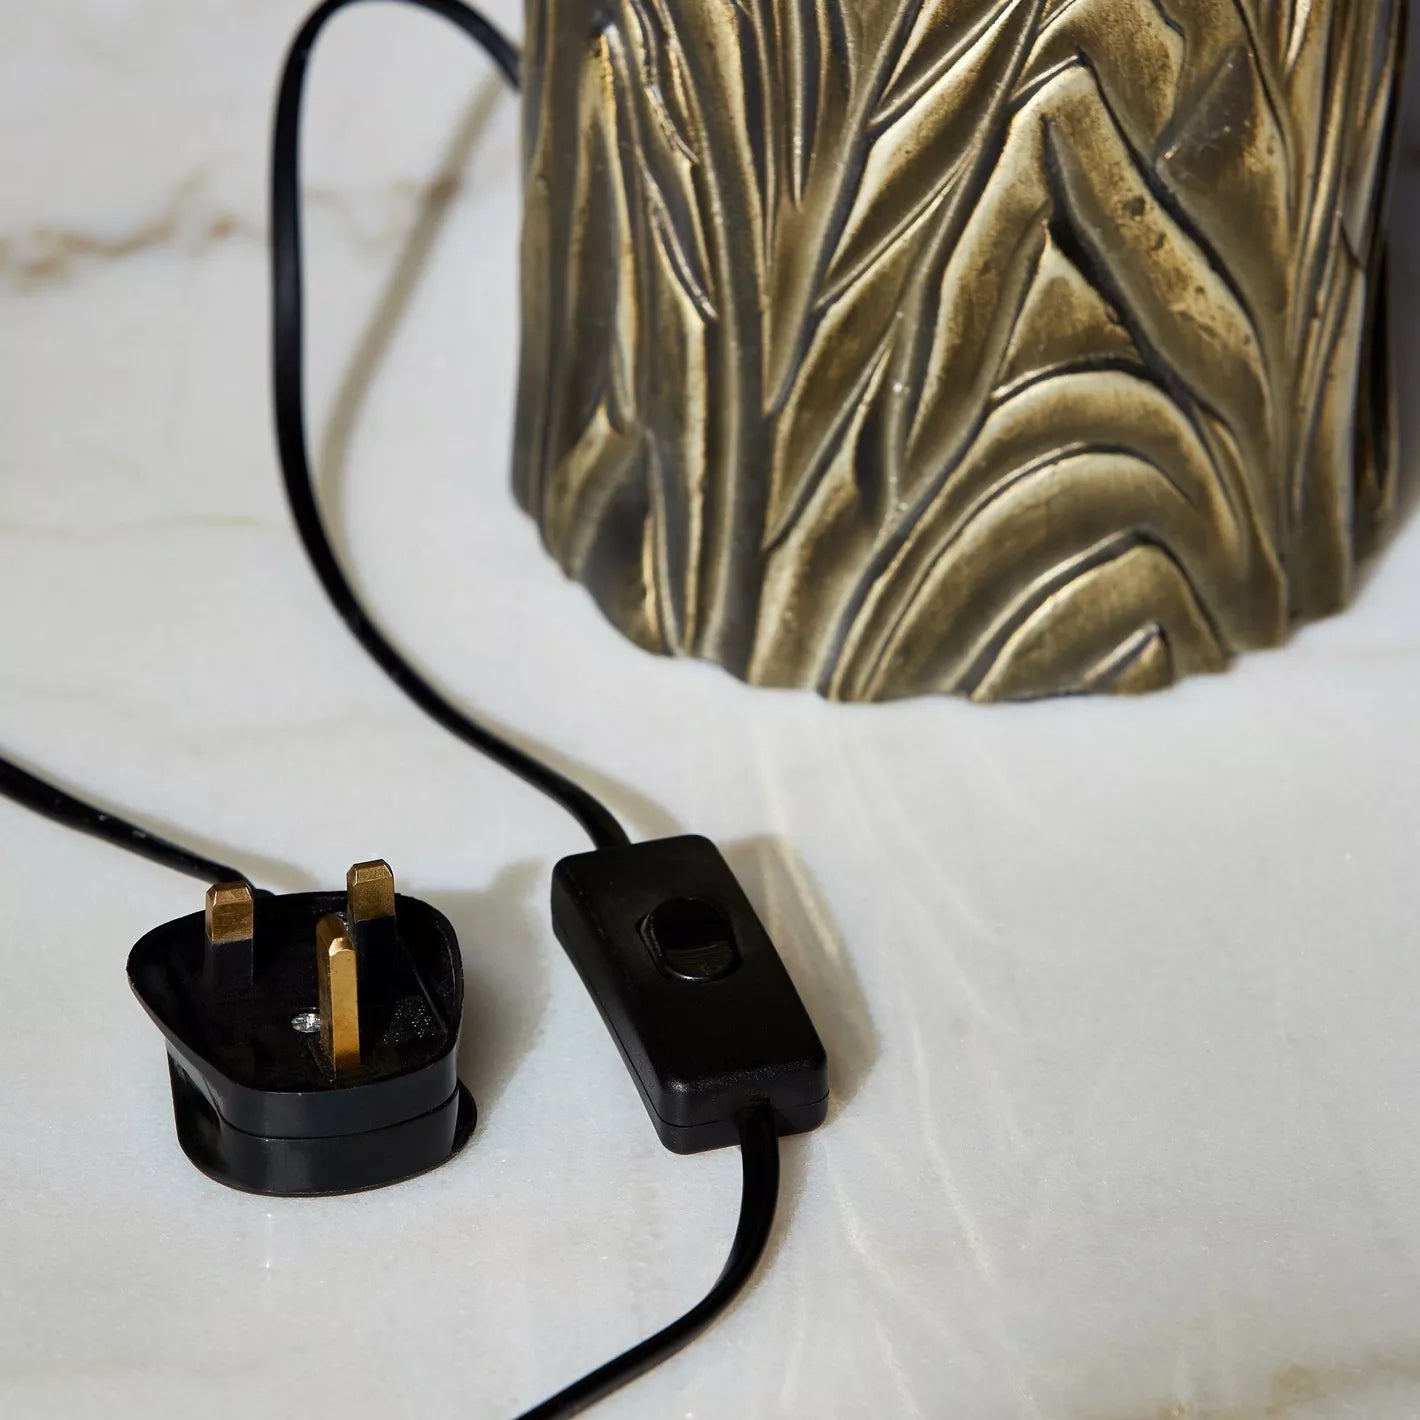 Eros Metal Table Lamp - 65 cm